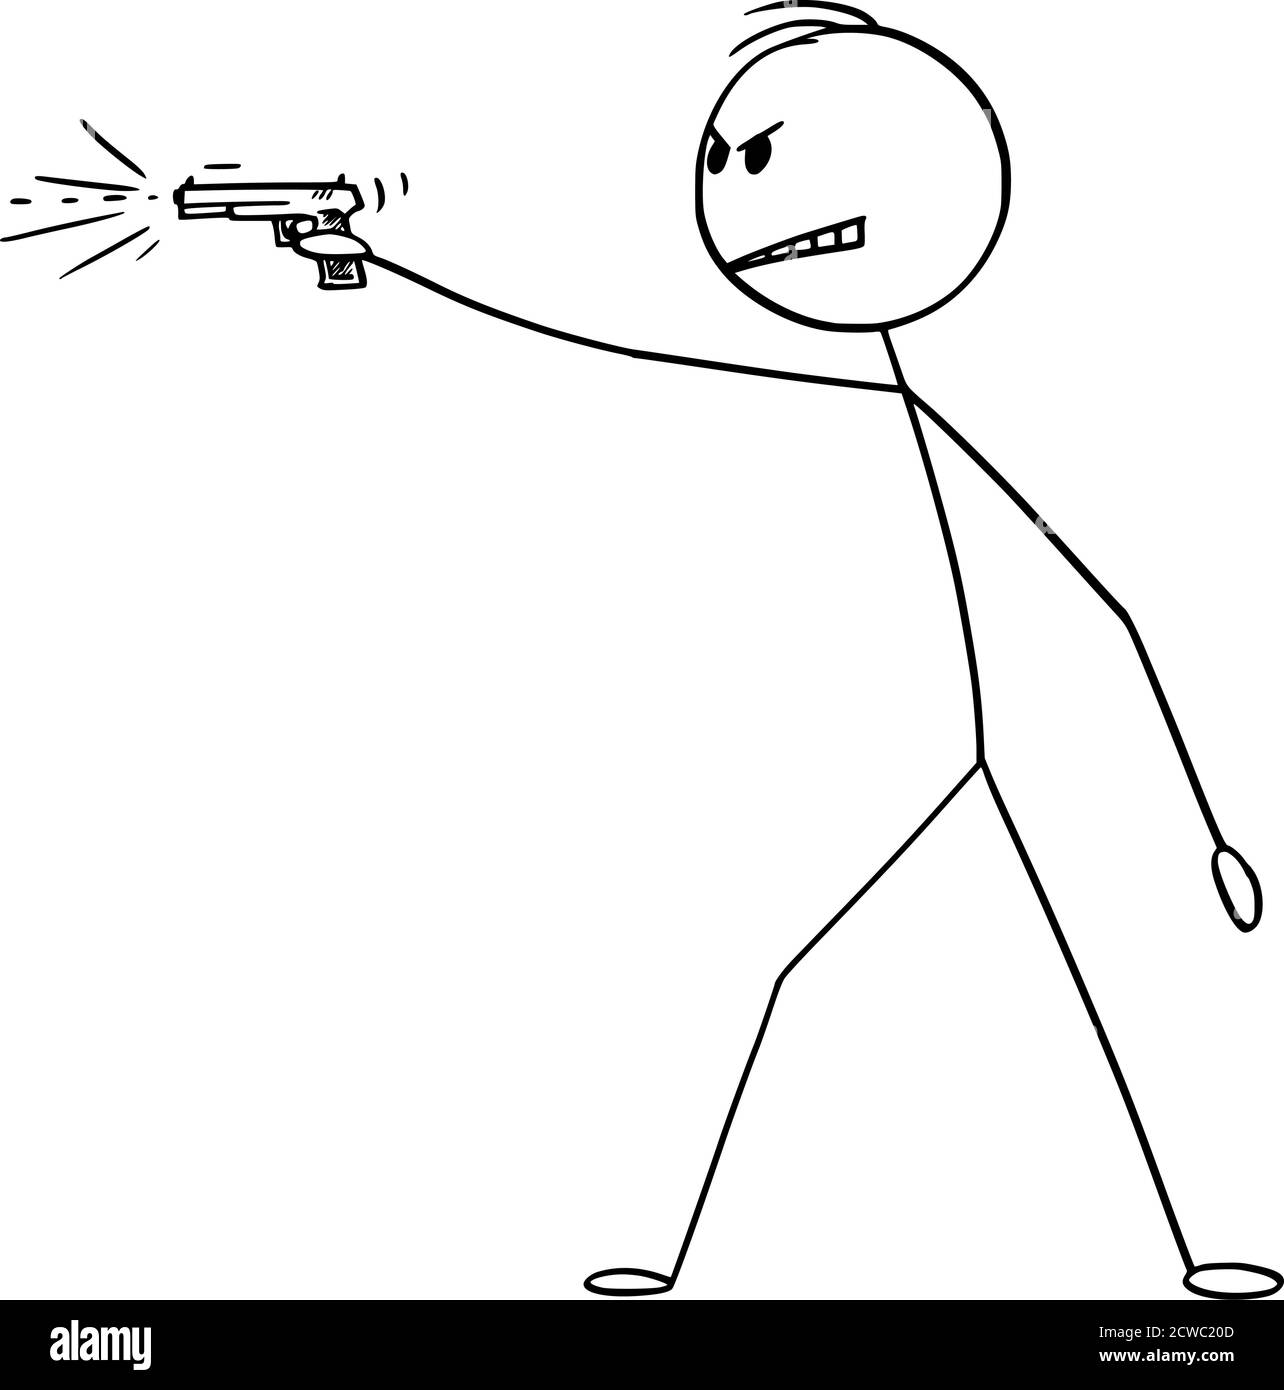 Vektor Cartoon Stick Figur Zeichnung konzeptionelle Illustration von gefährlichen wütenden Mann schießen eine Waffe, Pistole oder Pistole. Stock Vektor